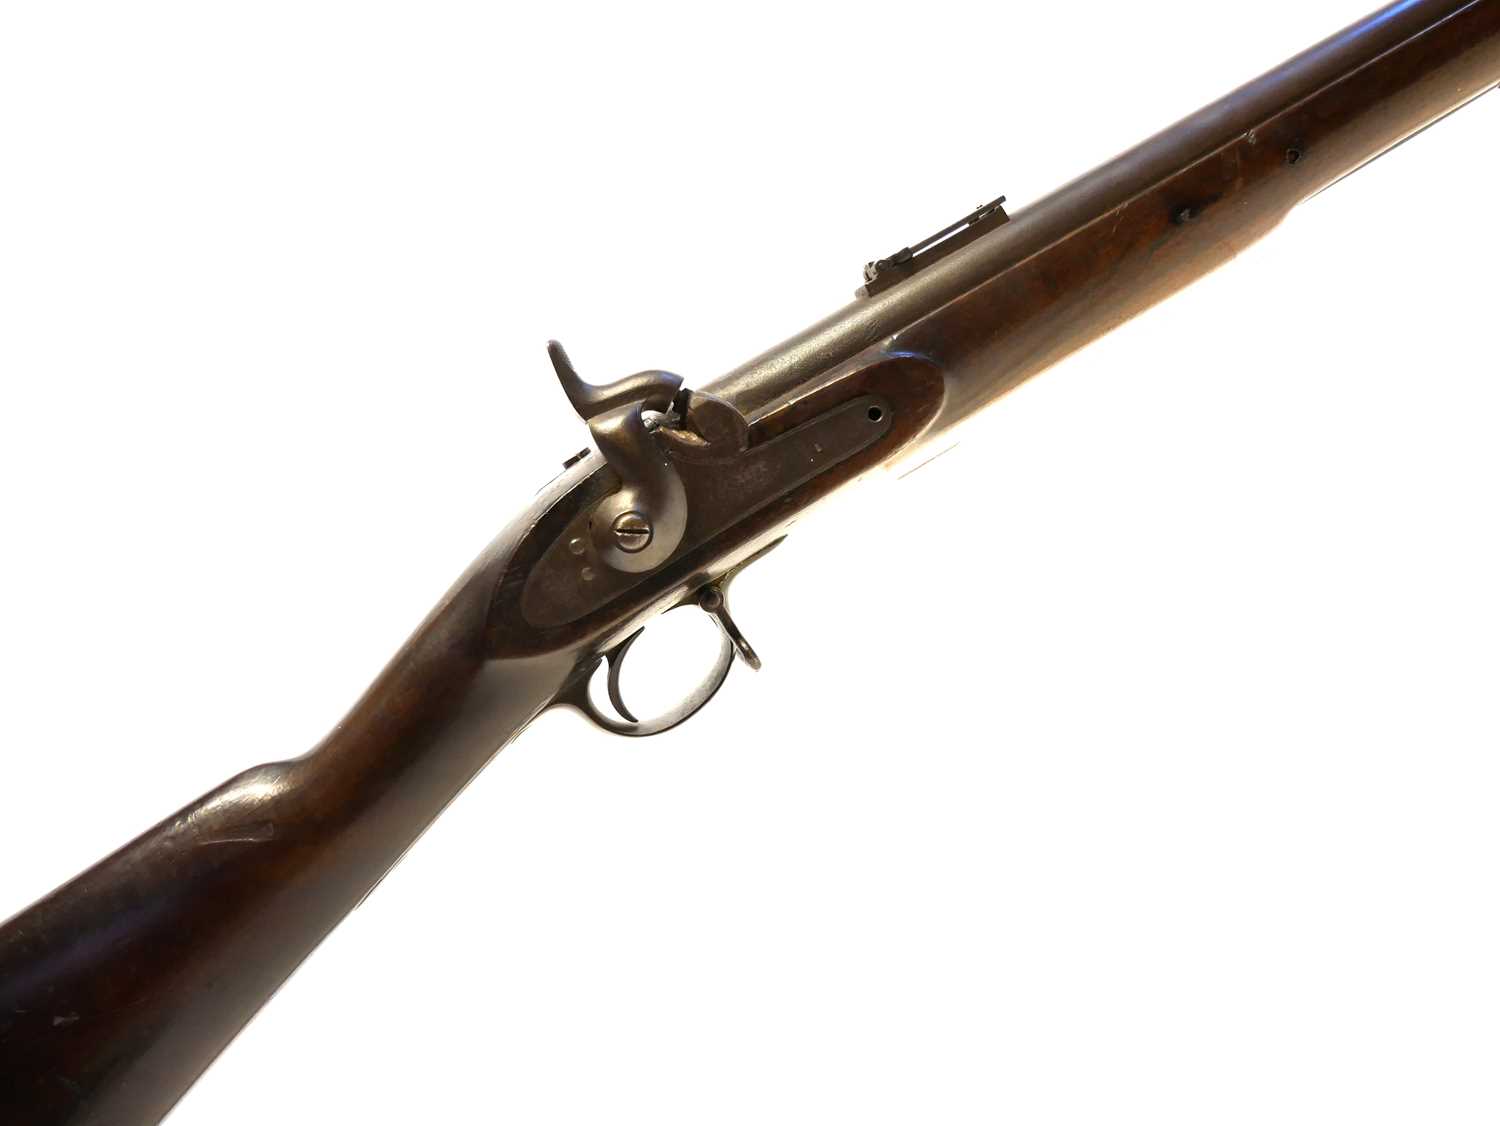 Lot 32 - Pattern 1842 percussion rifle musket and bayonet